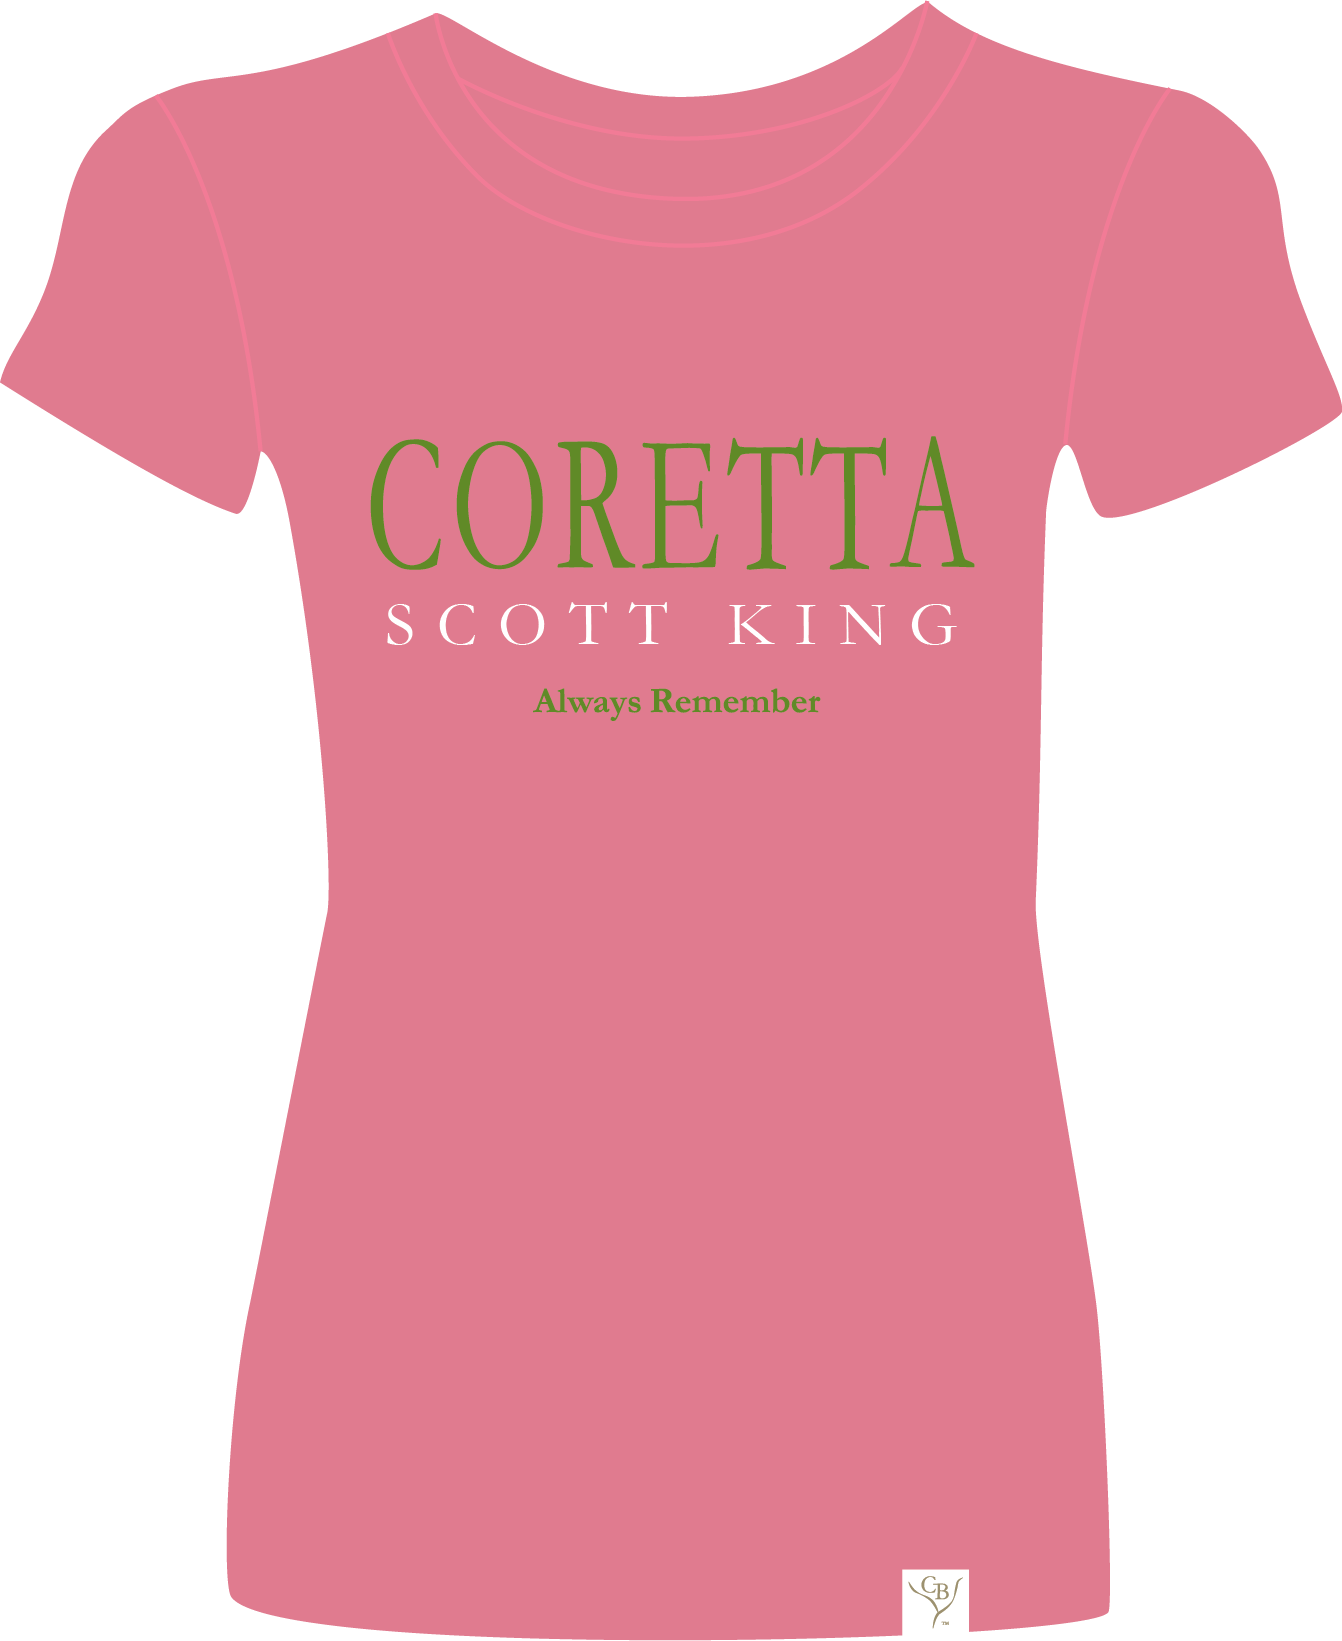 The Coretta 9